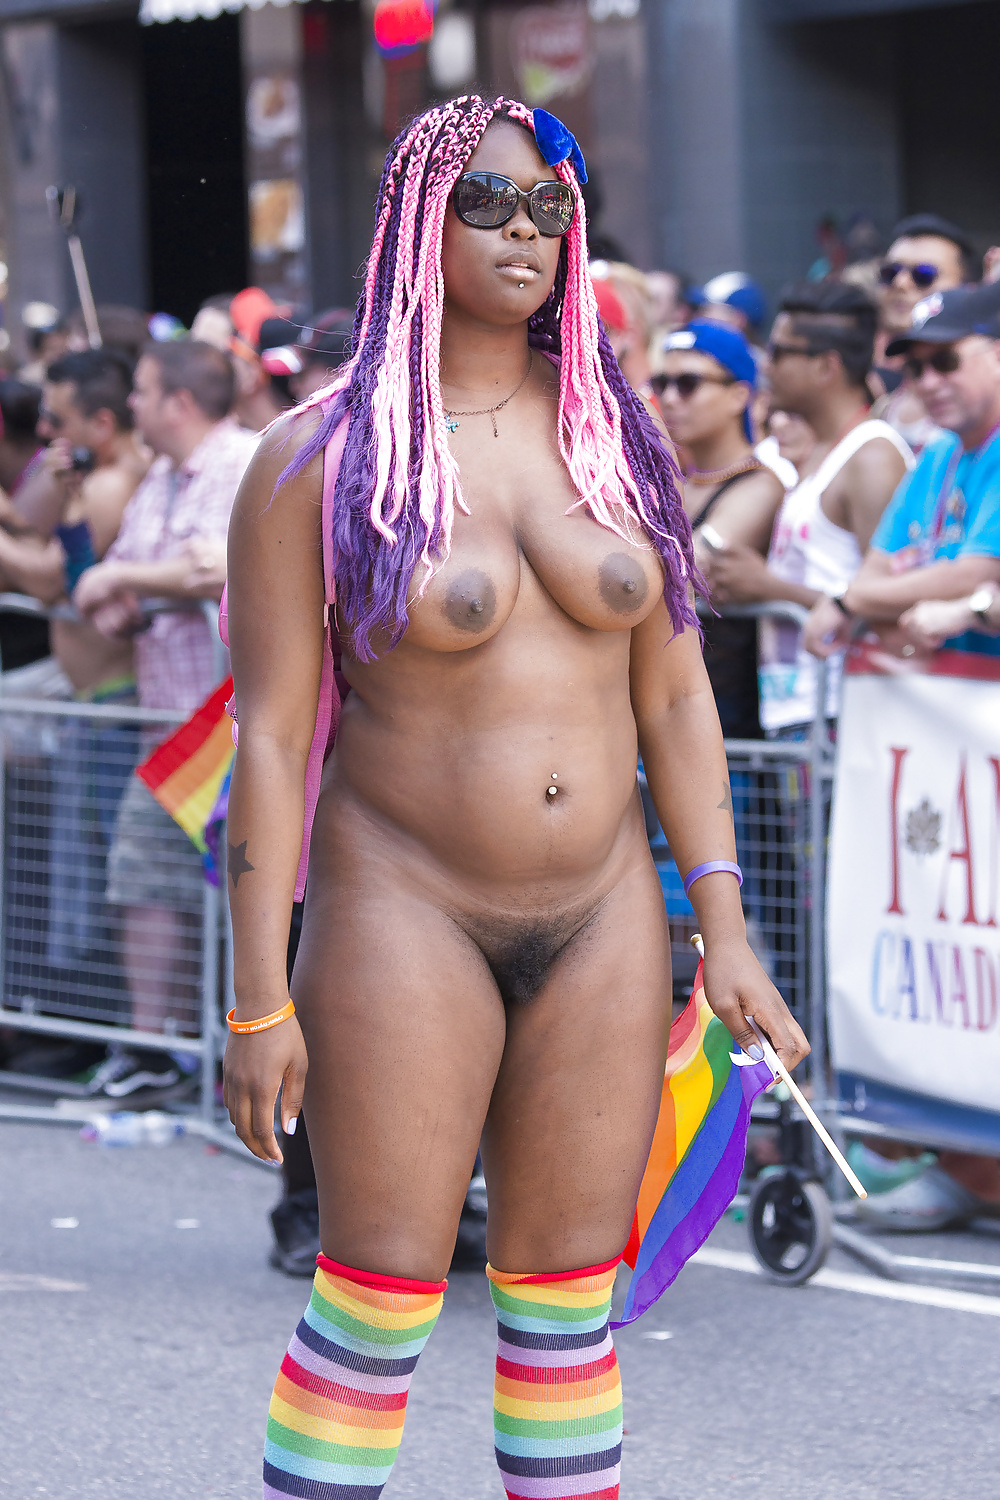 Ebony Woman Butt Naked in Public Parade - Photo #0.